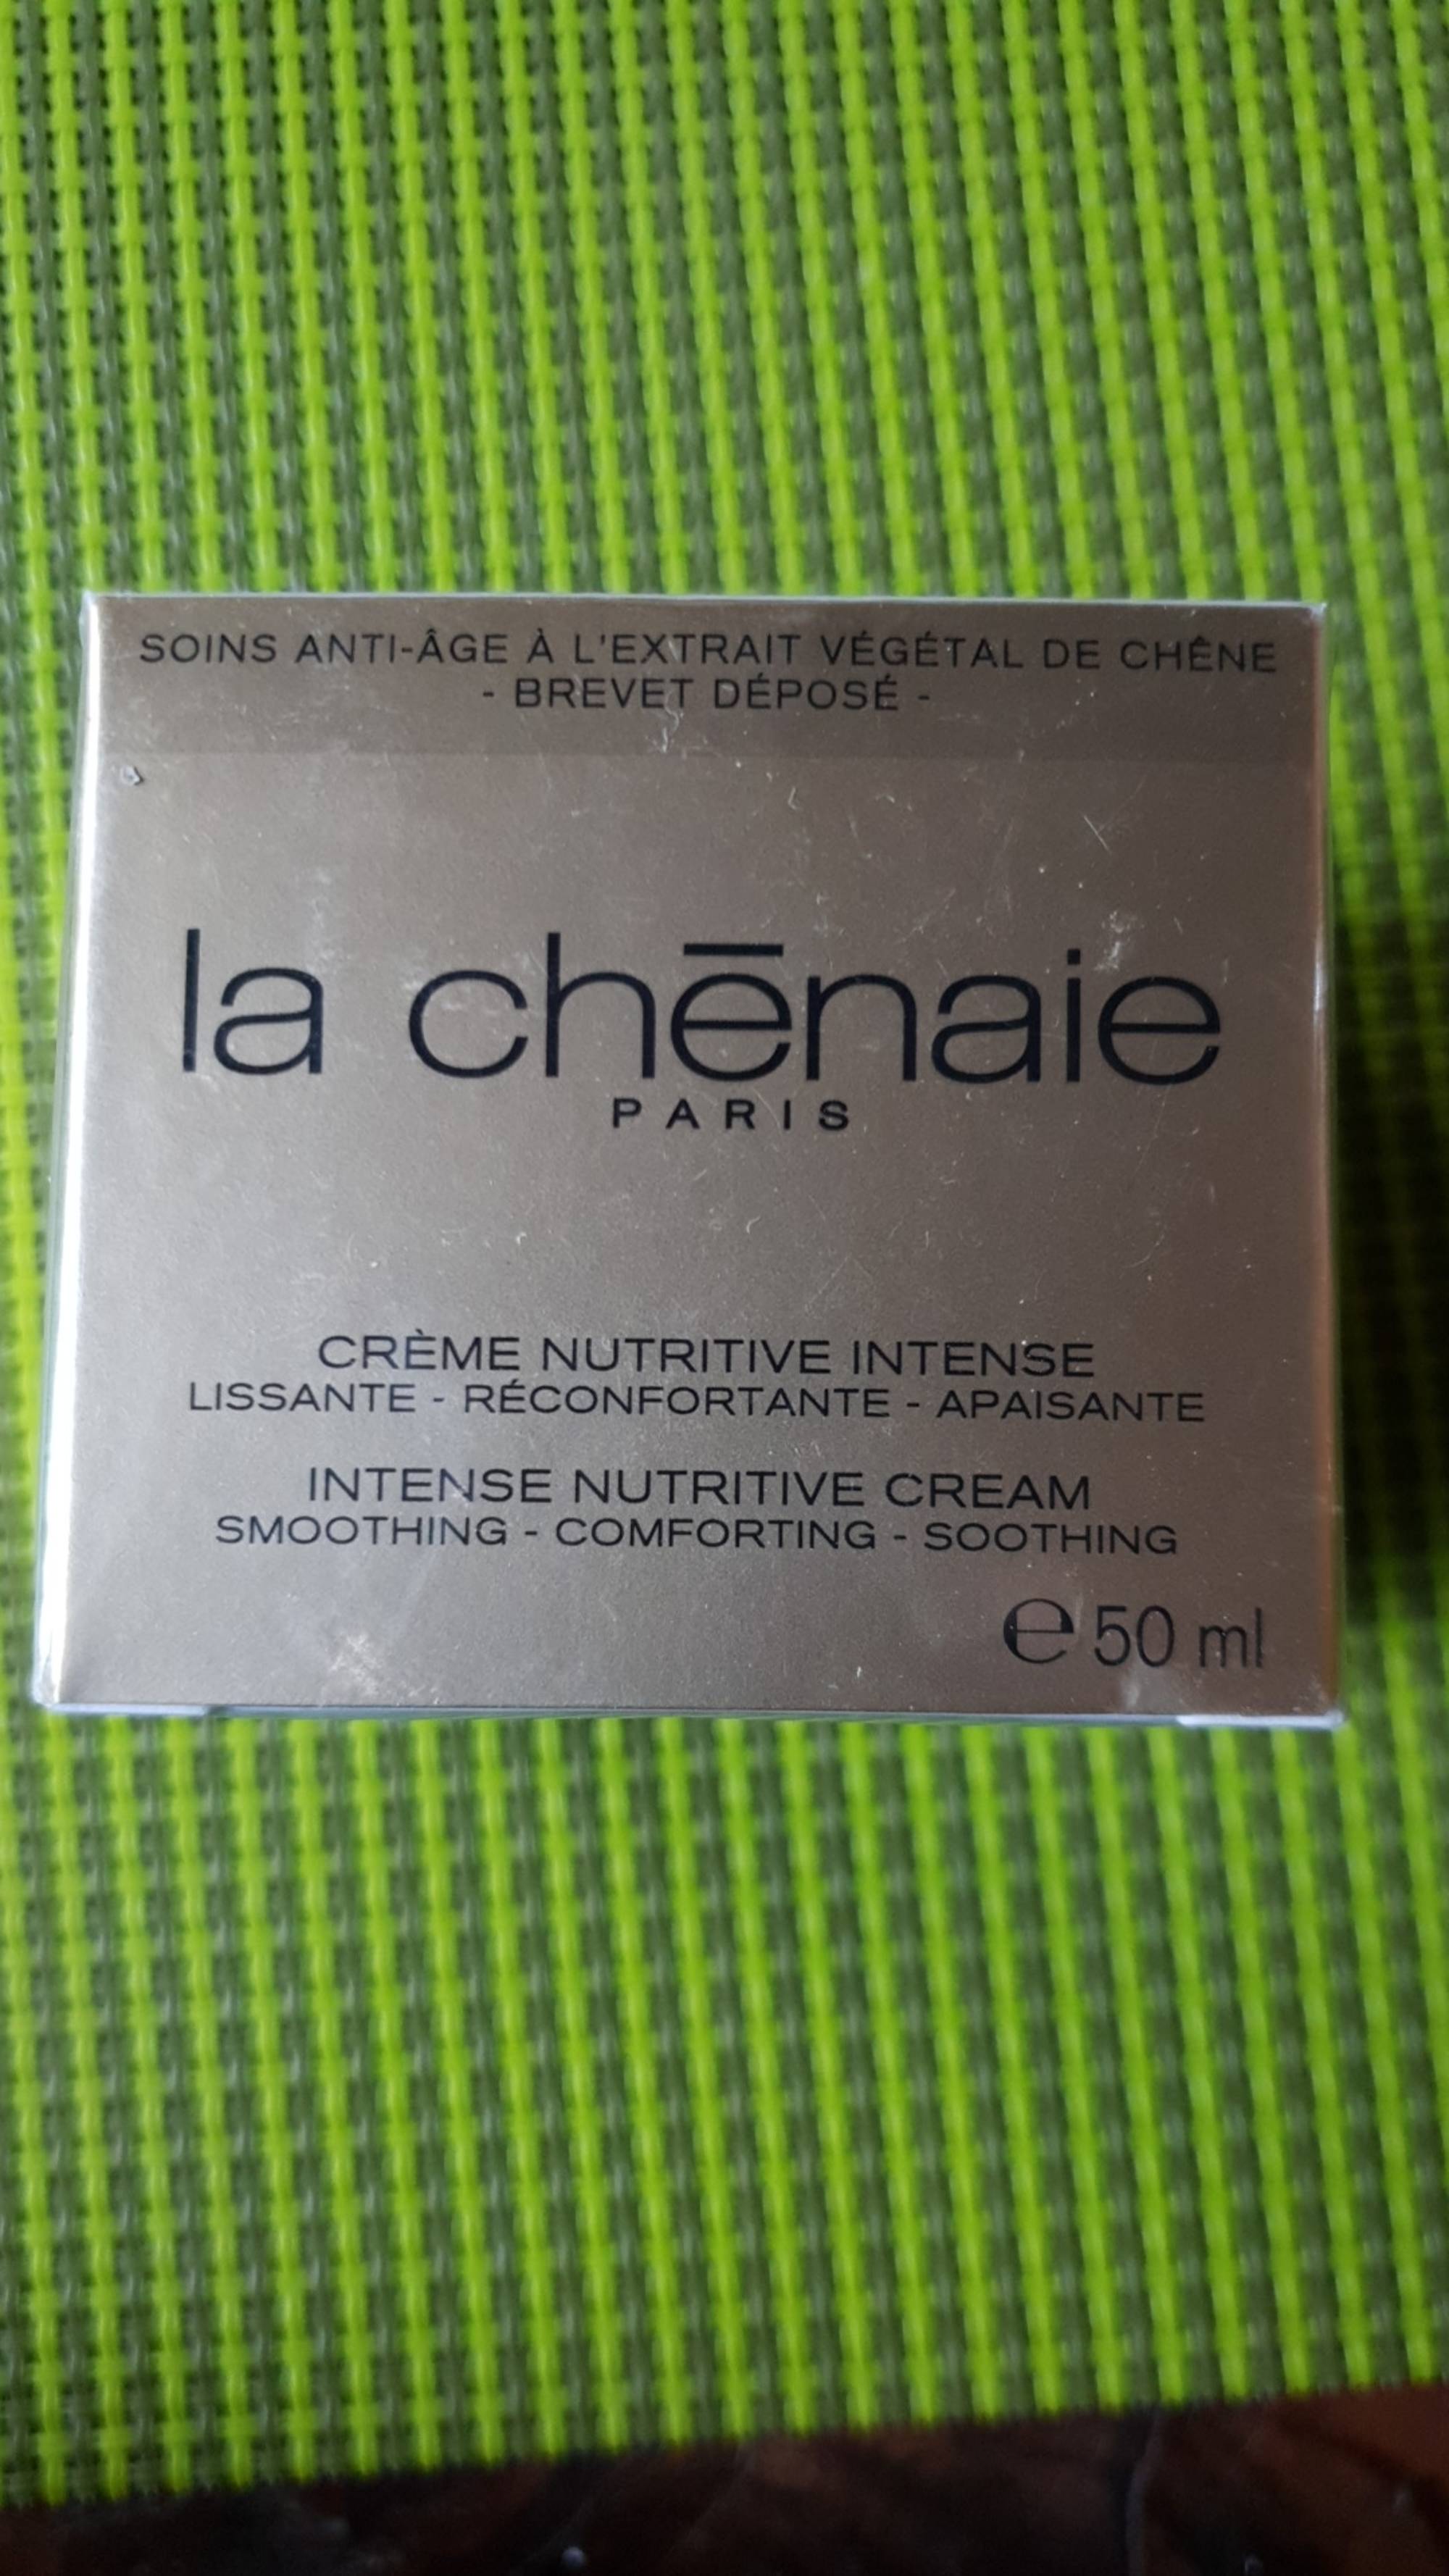 LA CHÊNAIE PARIS - Crème nutritive intense 